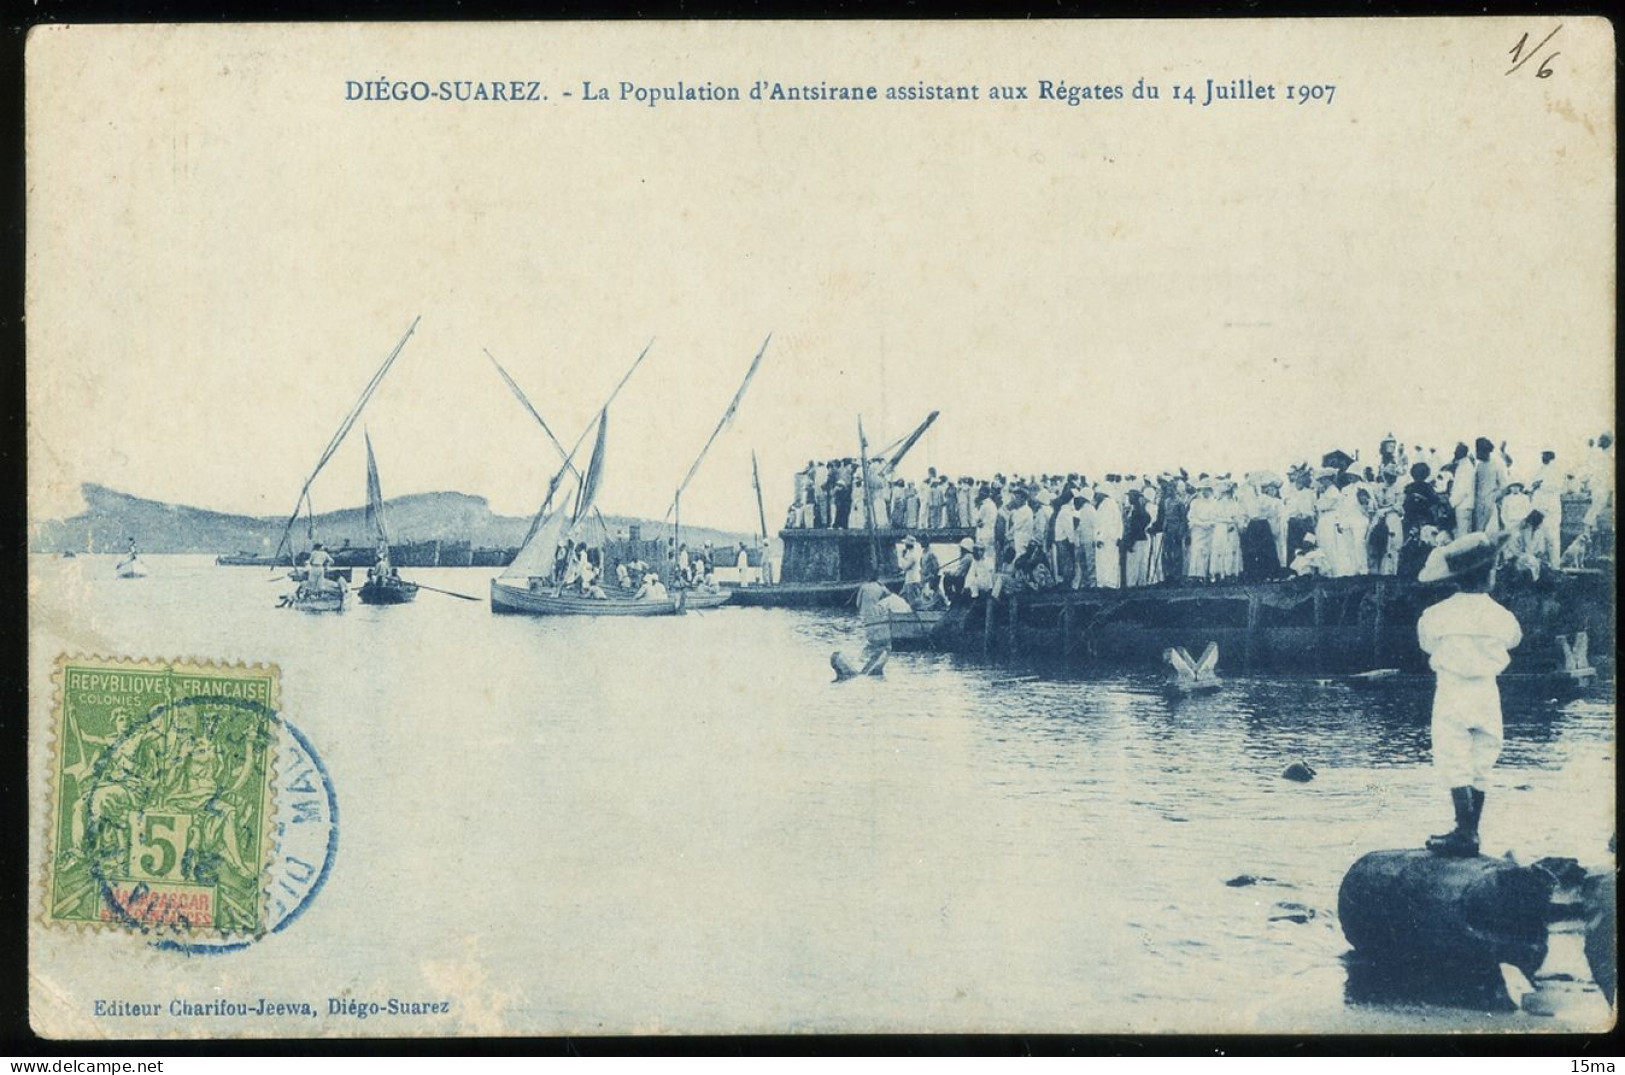 Diego Suarez Régates Du 14 Juillet 1907 Courses Des Bertons De La Flottille Passage Du Radeau - Madagascar